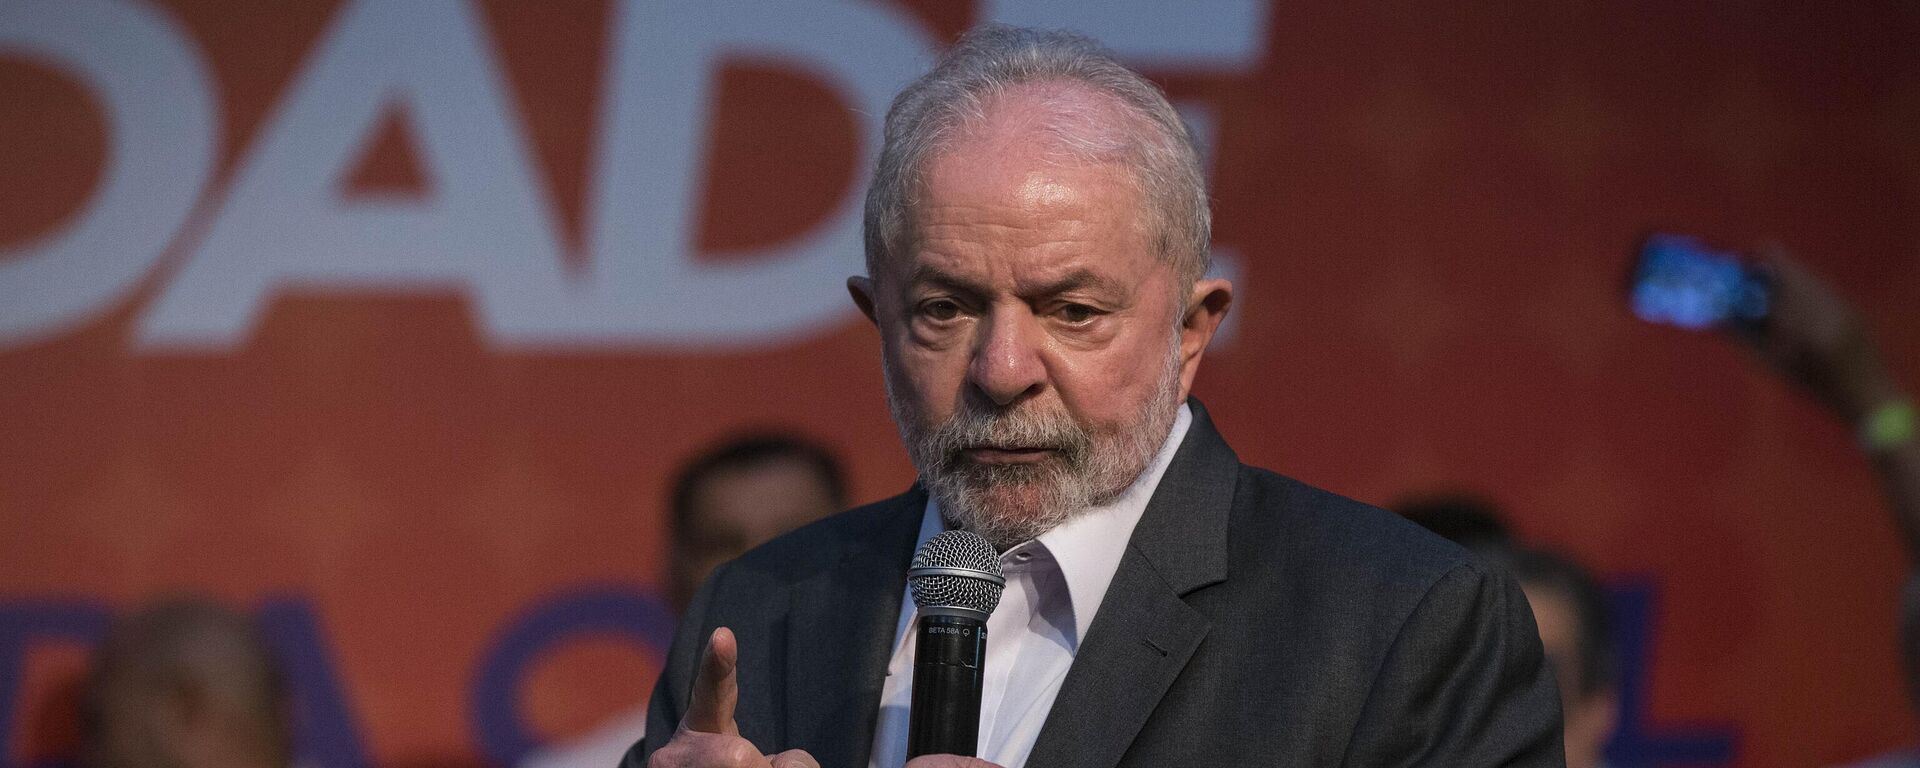 Ex-presidente Luiz Inácio Lula da Silva (PT) participa de evento promovido pelo partido Solidariedade, em 3 de maio de 2022 - Sputnik Brasil, 1920, 24.05.2022